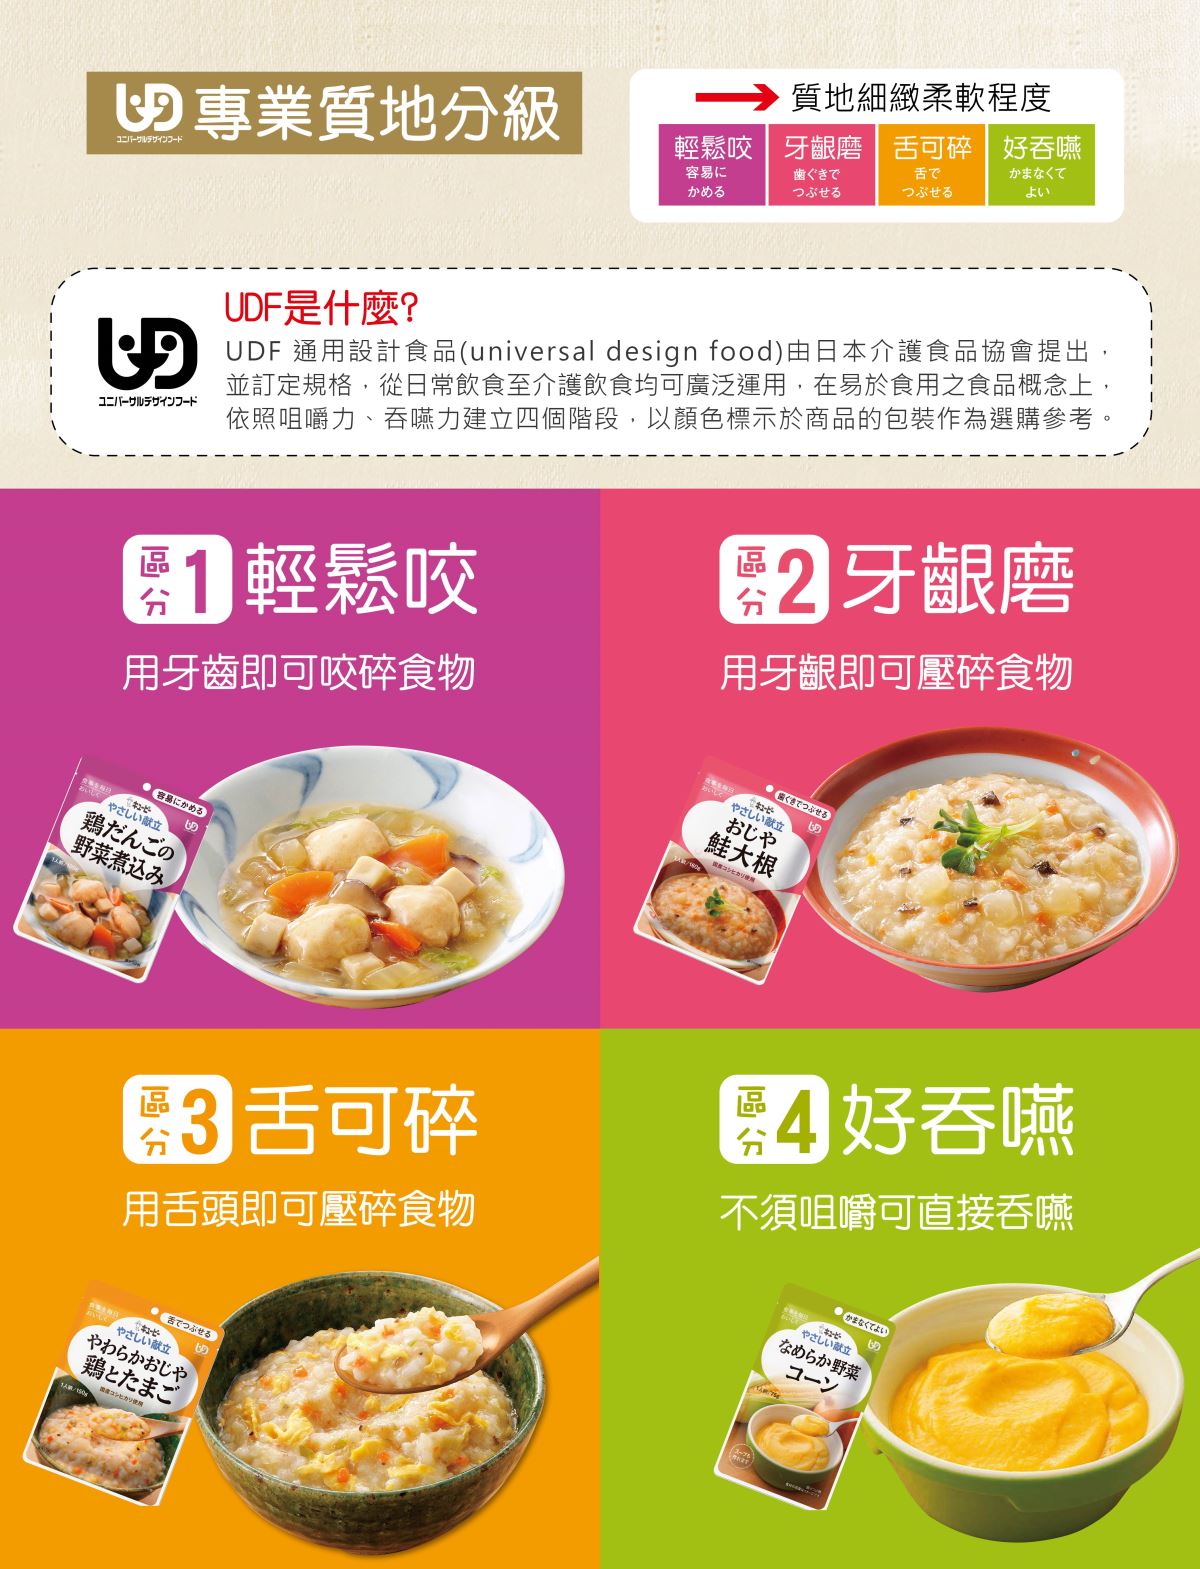 通用設計食品 Universal Design Food (UDF)